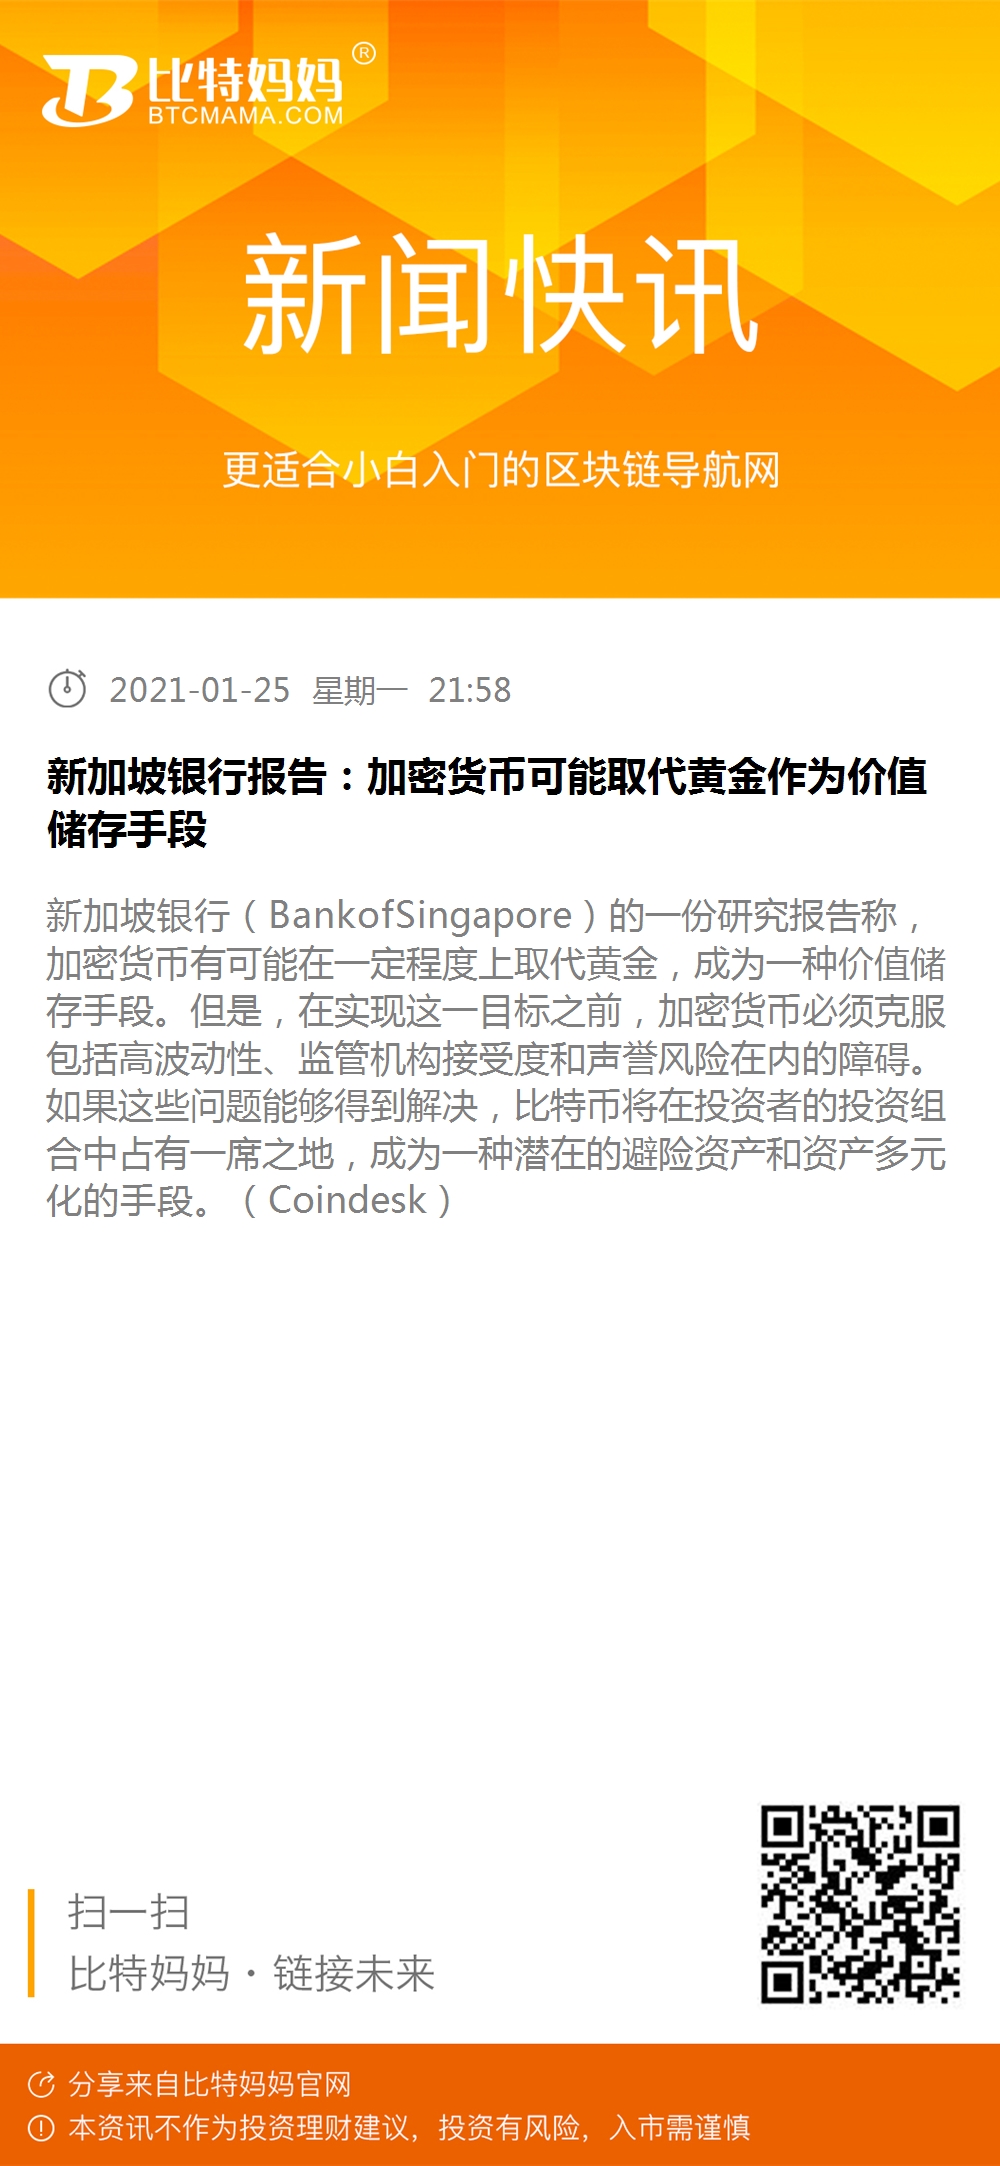 白话区块链早报：上海闵行法院称比特币系通过合法劳动取得